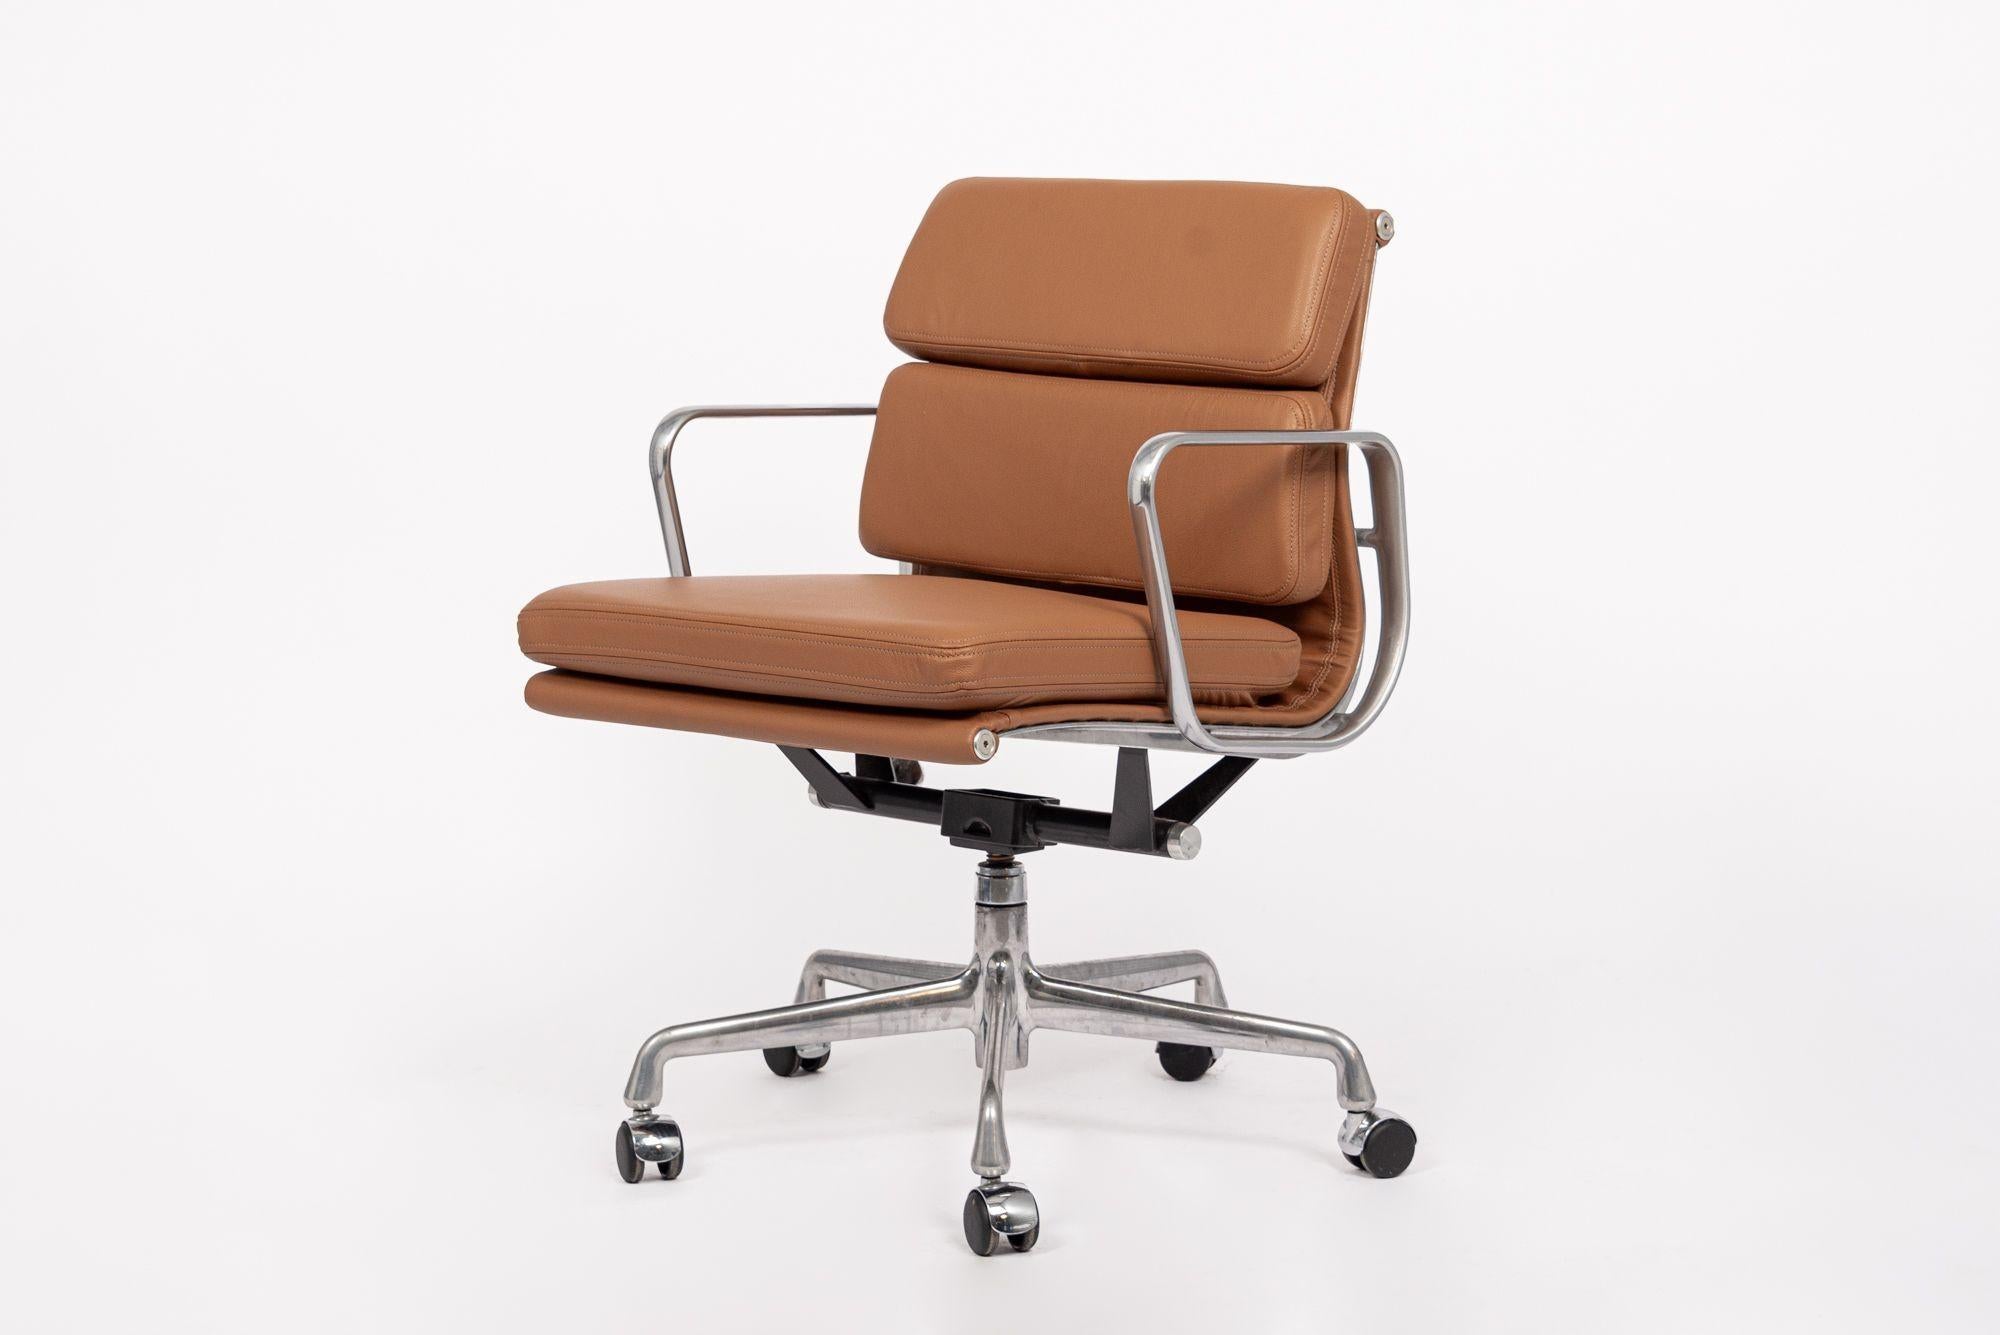 Cette authentique chaise de bureau en cuir marron Eames for Herman Miller Soft Pad Management Height de la Collection S a été fabriquée dans les années 2000. Cette chaise de bureau classique et moderne du milieu du siècle a été introduite pour la